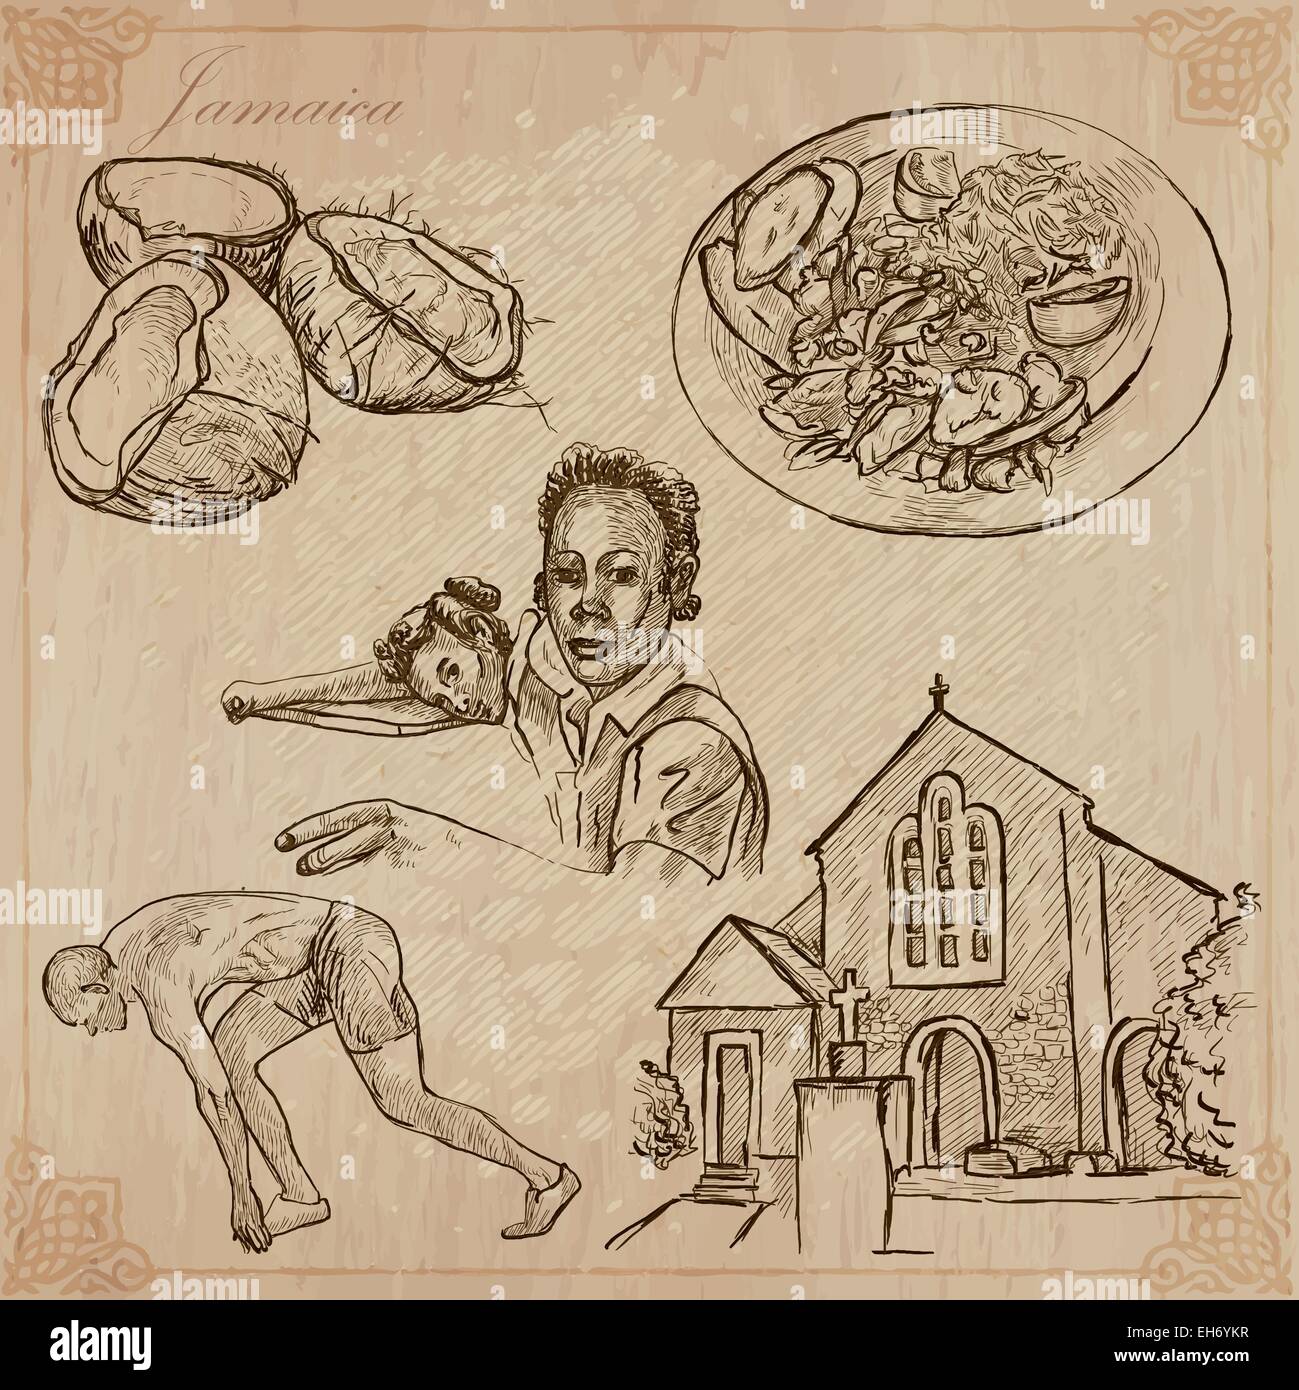 Reisen: Jamaika (Set Nr. 3) - Sammlung von einer Hand gezeichnet Vektor-Illustrationen. Jede Zeichnung bestehen aus drei Schichten von Linien, die Stock Vektor